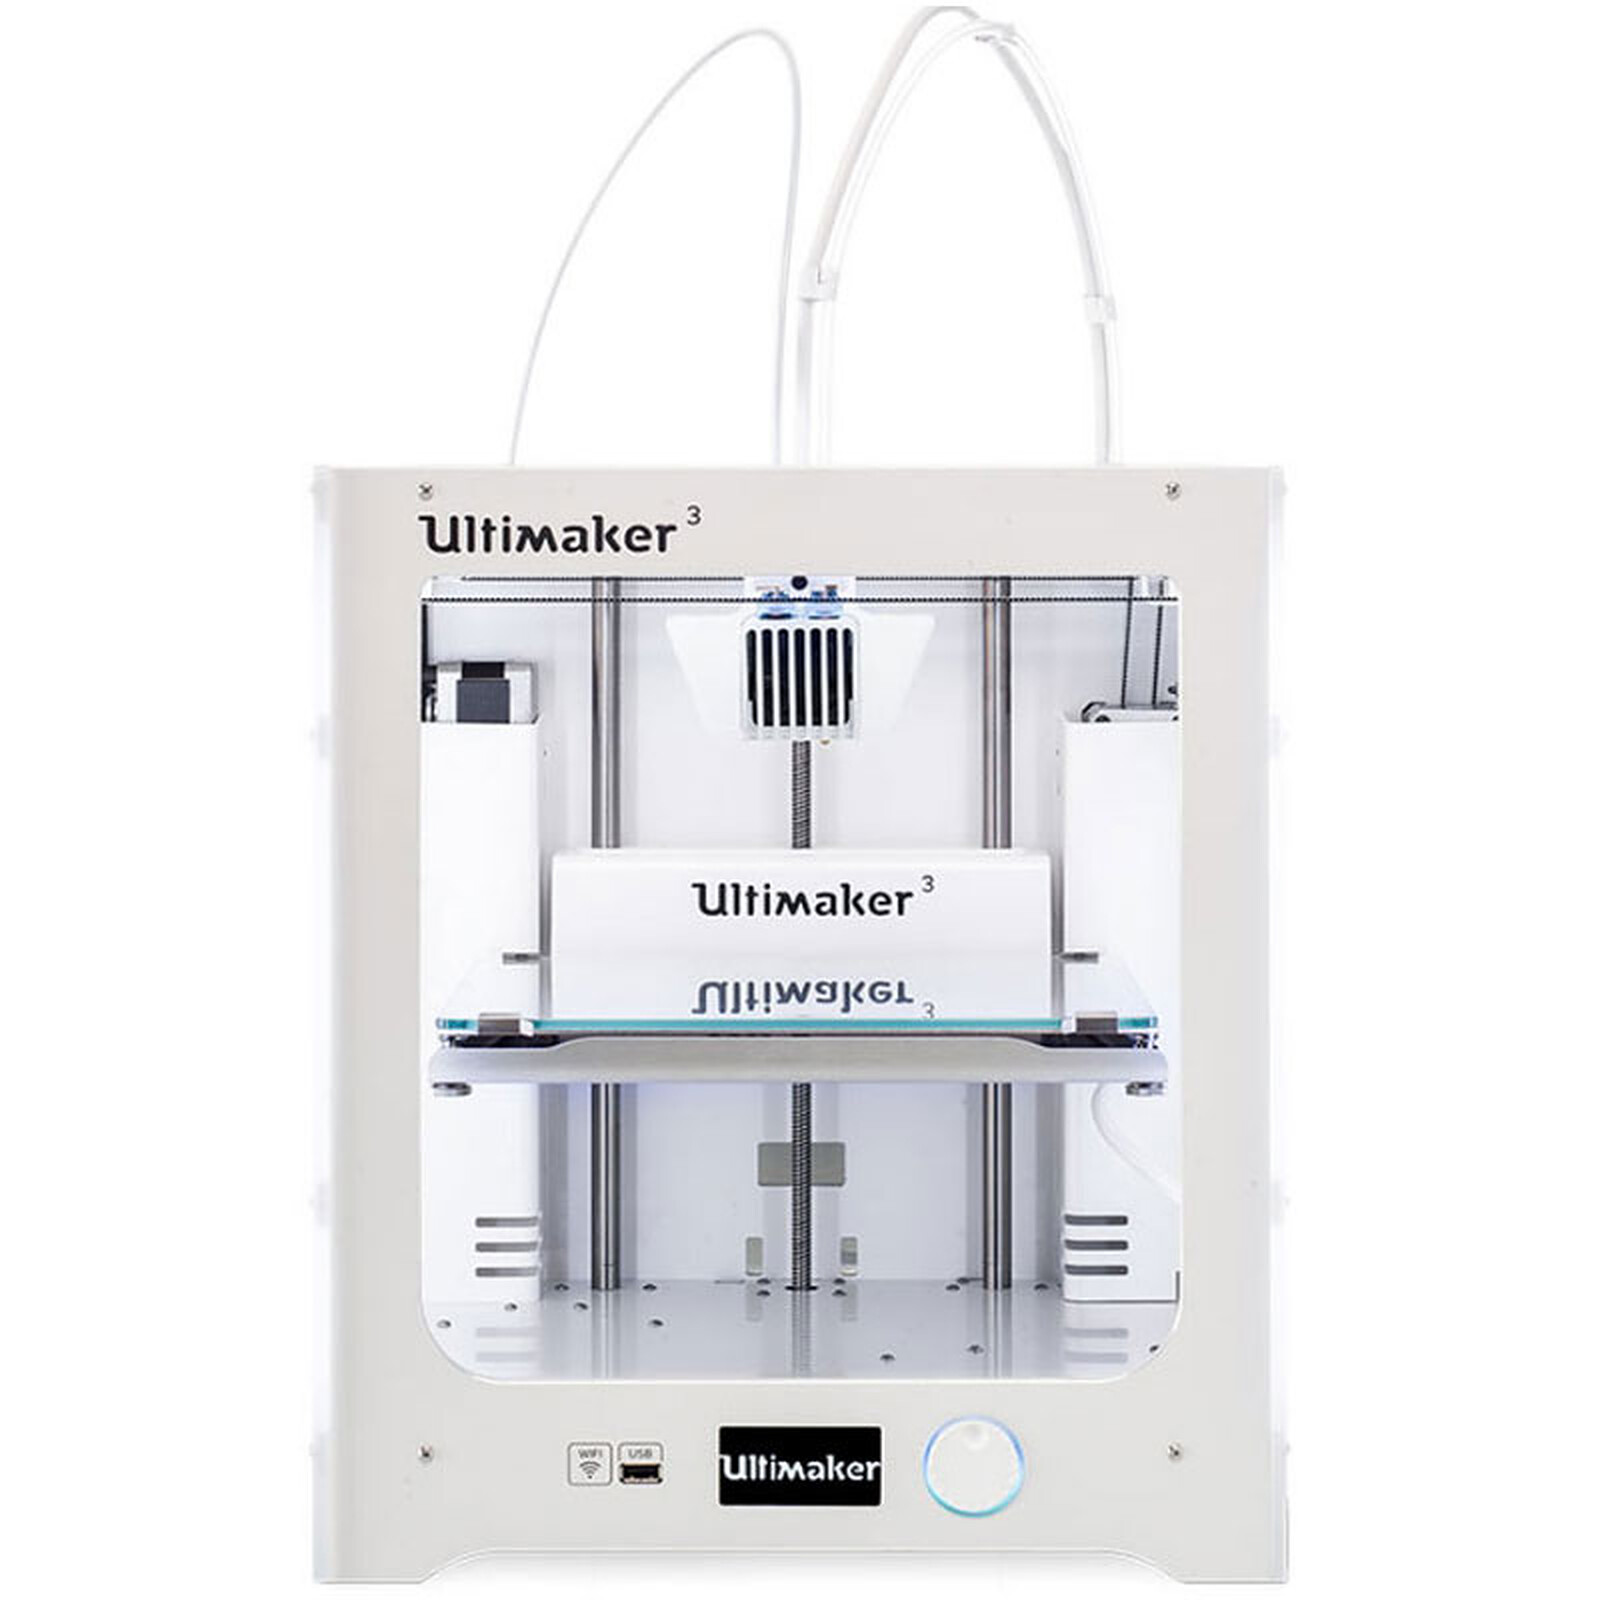 Ultimaker 3 Imprimante 3D couleur professionnelle /à 2 t/êtes dimpression compatible tous mat/ériaux Wi-Fi//Ethernet//USB Imprimante 3D